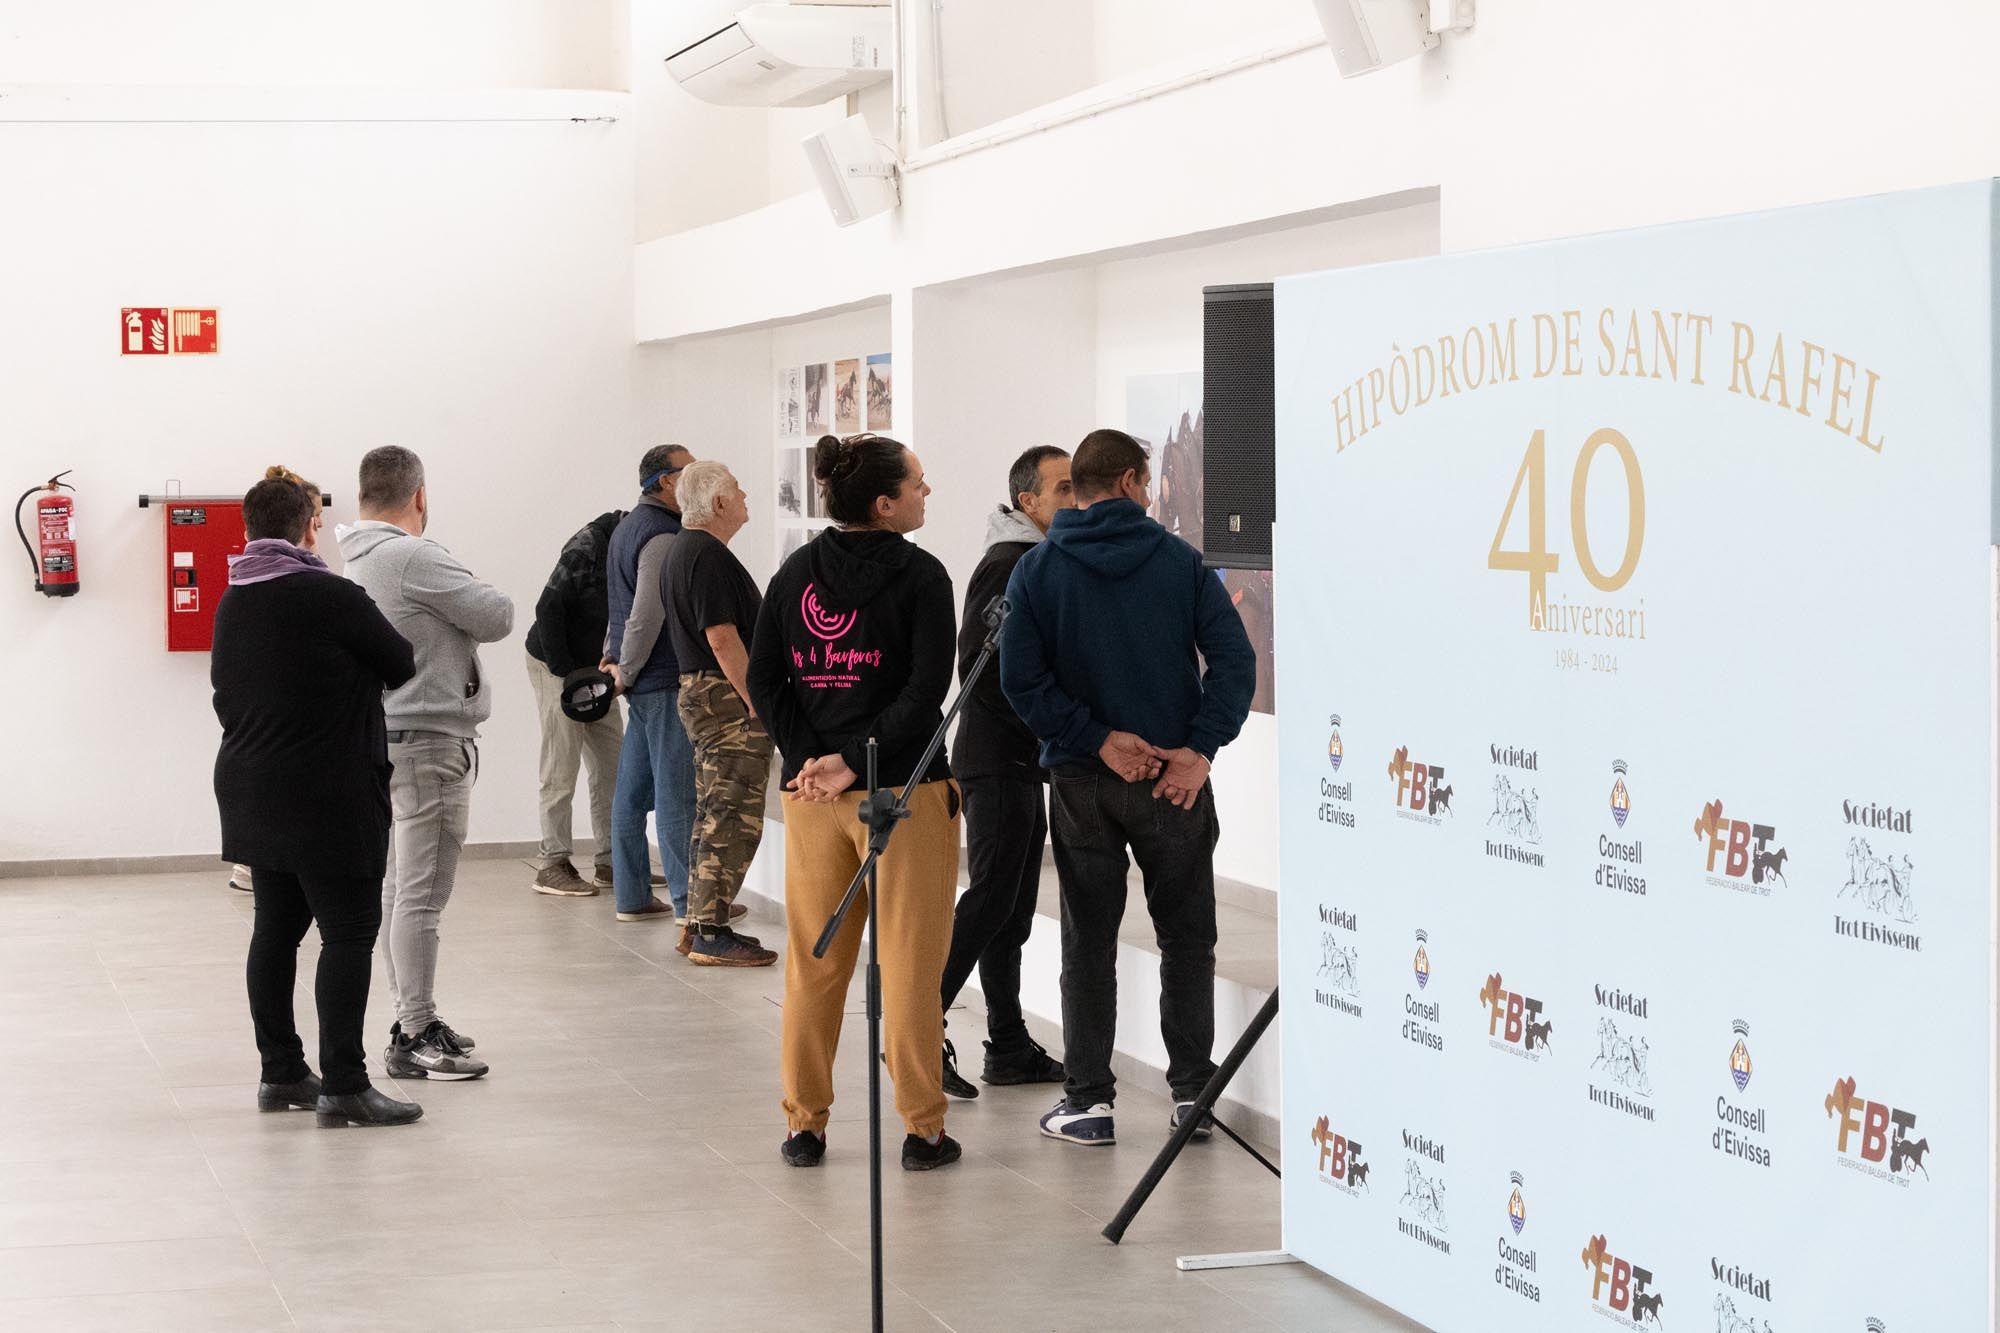 Exposición fotográfica del 40 aniversario del hipódromo de Sant Rafel